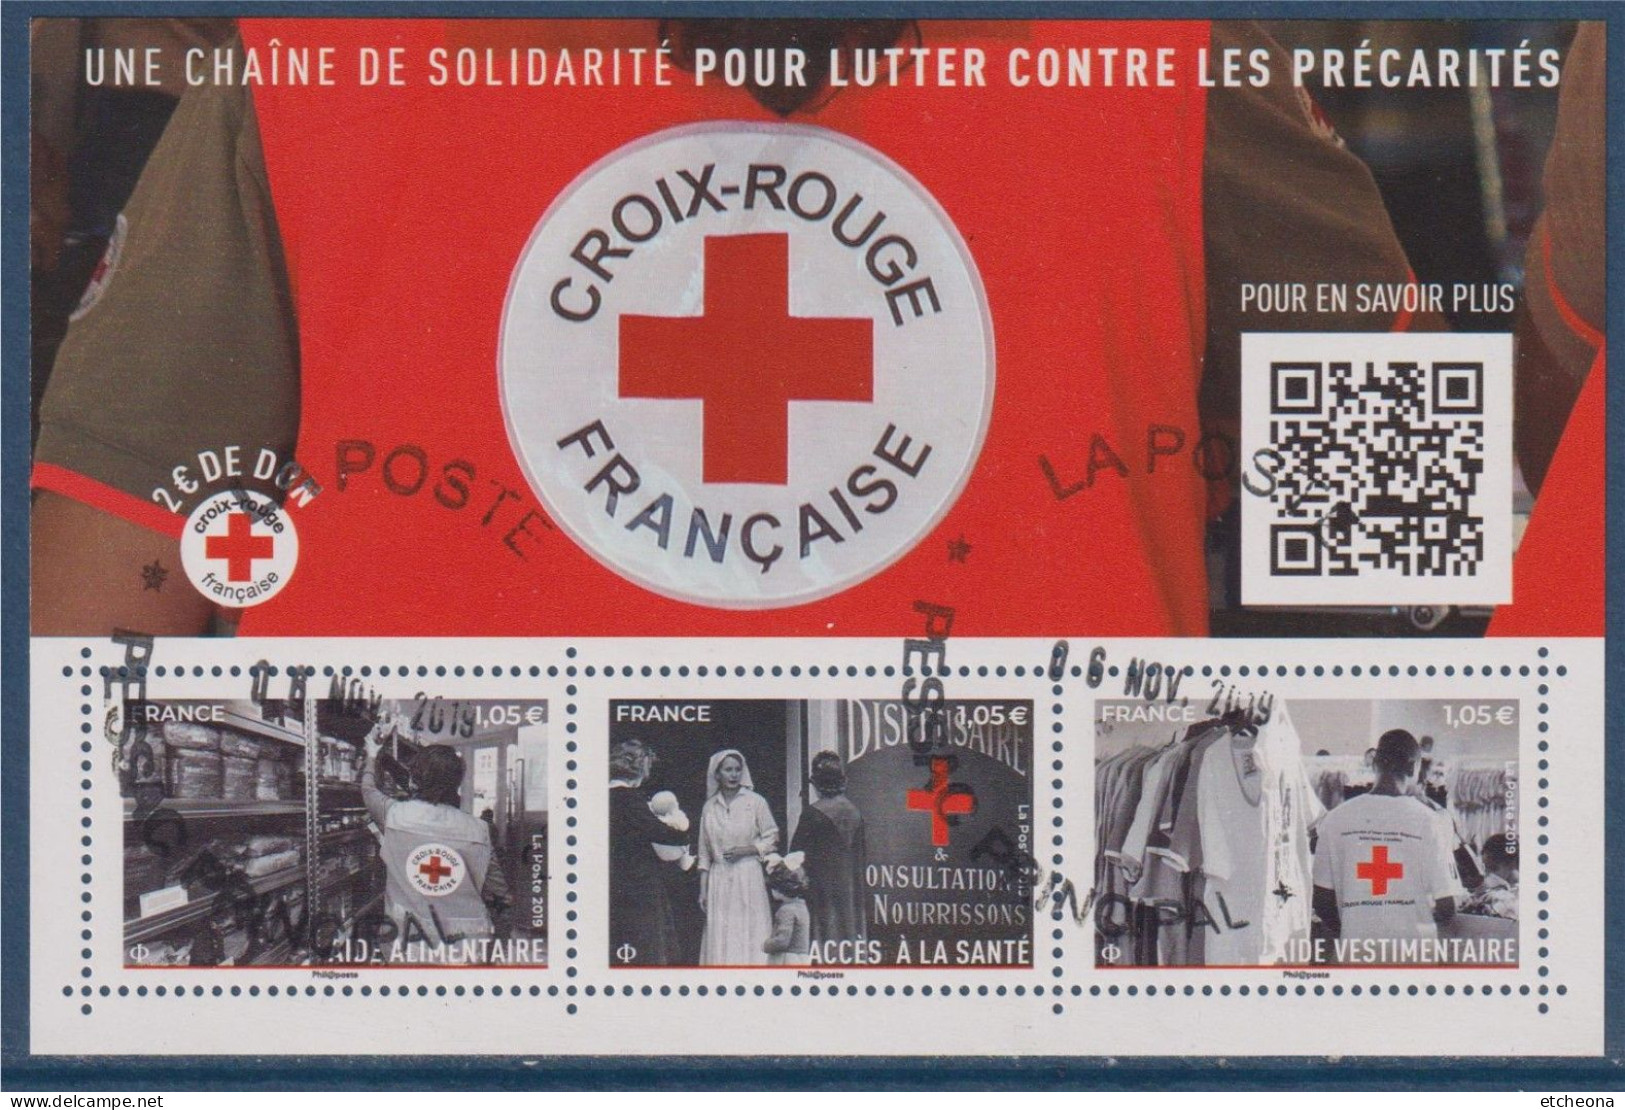 Croix Rouge 2019 Bloc Oblitéré F5350, Aide Alimentaire 5350, Vestimentaire 5352, Et Accès à La Santé 5351 - Croix-Rouge